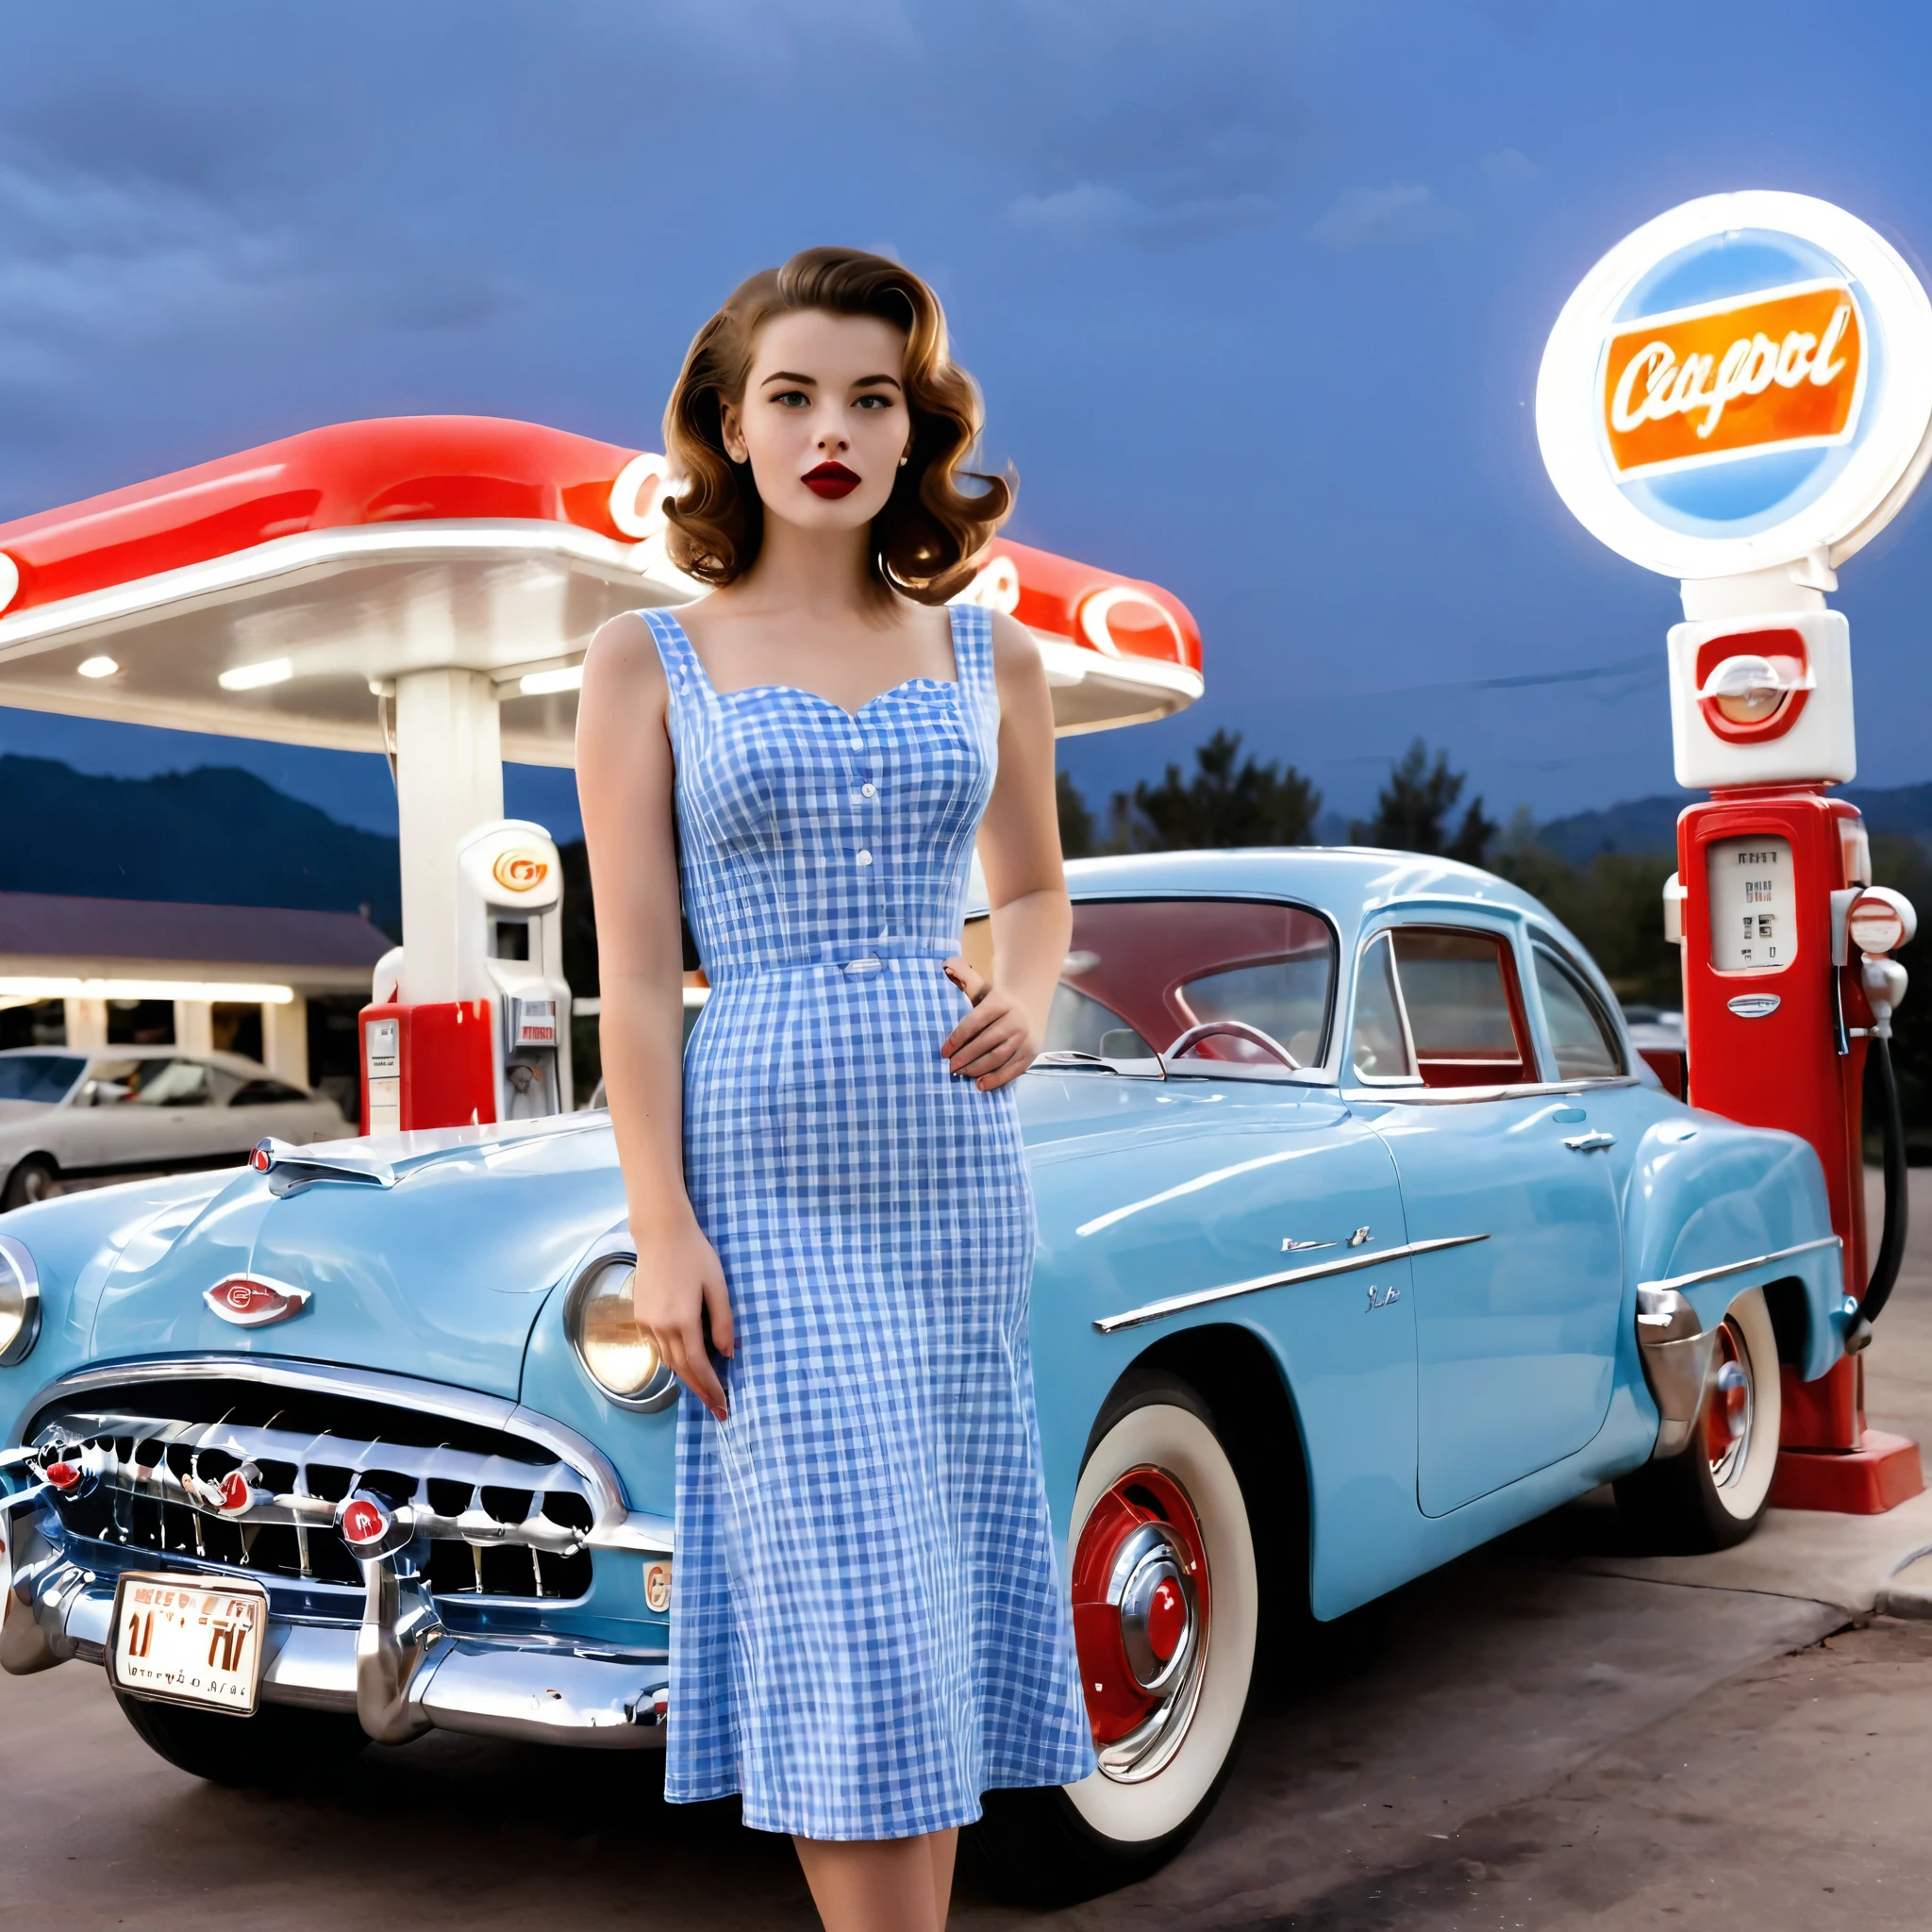 1950년대 빈티지 스타일을 지닌 아름다운 젊은 여성이 복고풍 주유소의 클래식 파란색 자동차 앞에 자신 있게 서 있습니다.. 그녀는 꼭 맞는 옷을 입는다, 몸매를 더욱 돋보이게 해주는 블루 깅엄 드레스, 레드립스틱으로 우아함을 더한, 갈색 머리. 주유소는 향수를 불러일으키는 느낌이에요, 빨간색과 흰색 액센트와 클래식 가스 펌프가 있습니다.. 위의 밤하늘은 맑다, 현장에 고요한 분위기를 더하다. 전체적인 분위기는 고풍스럽고 글래머러스한 느낌이에요, 20세기 중반 아메리카나의 정수를 포착하다.